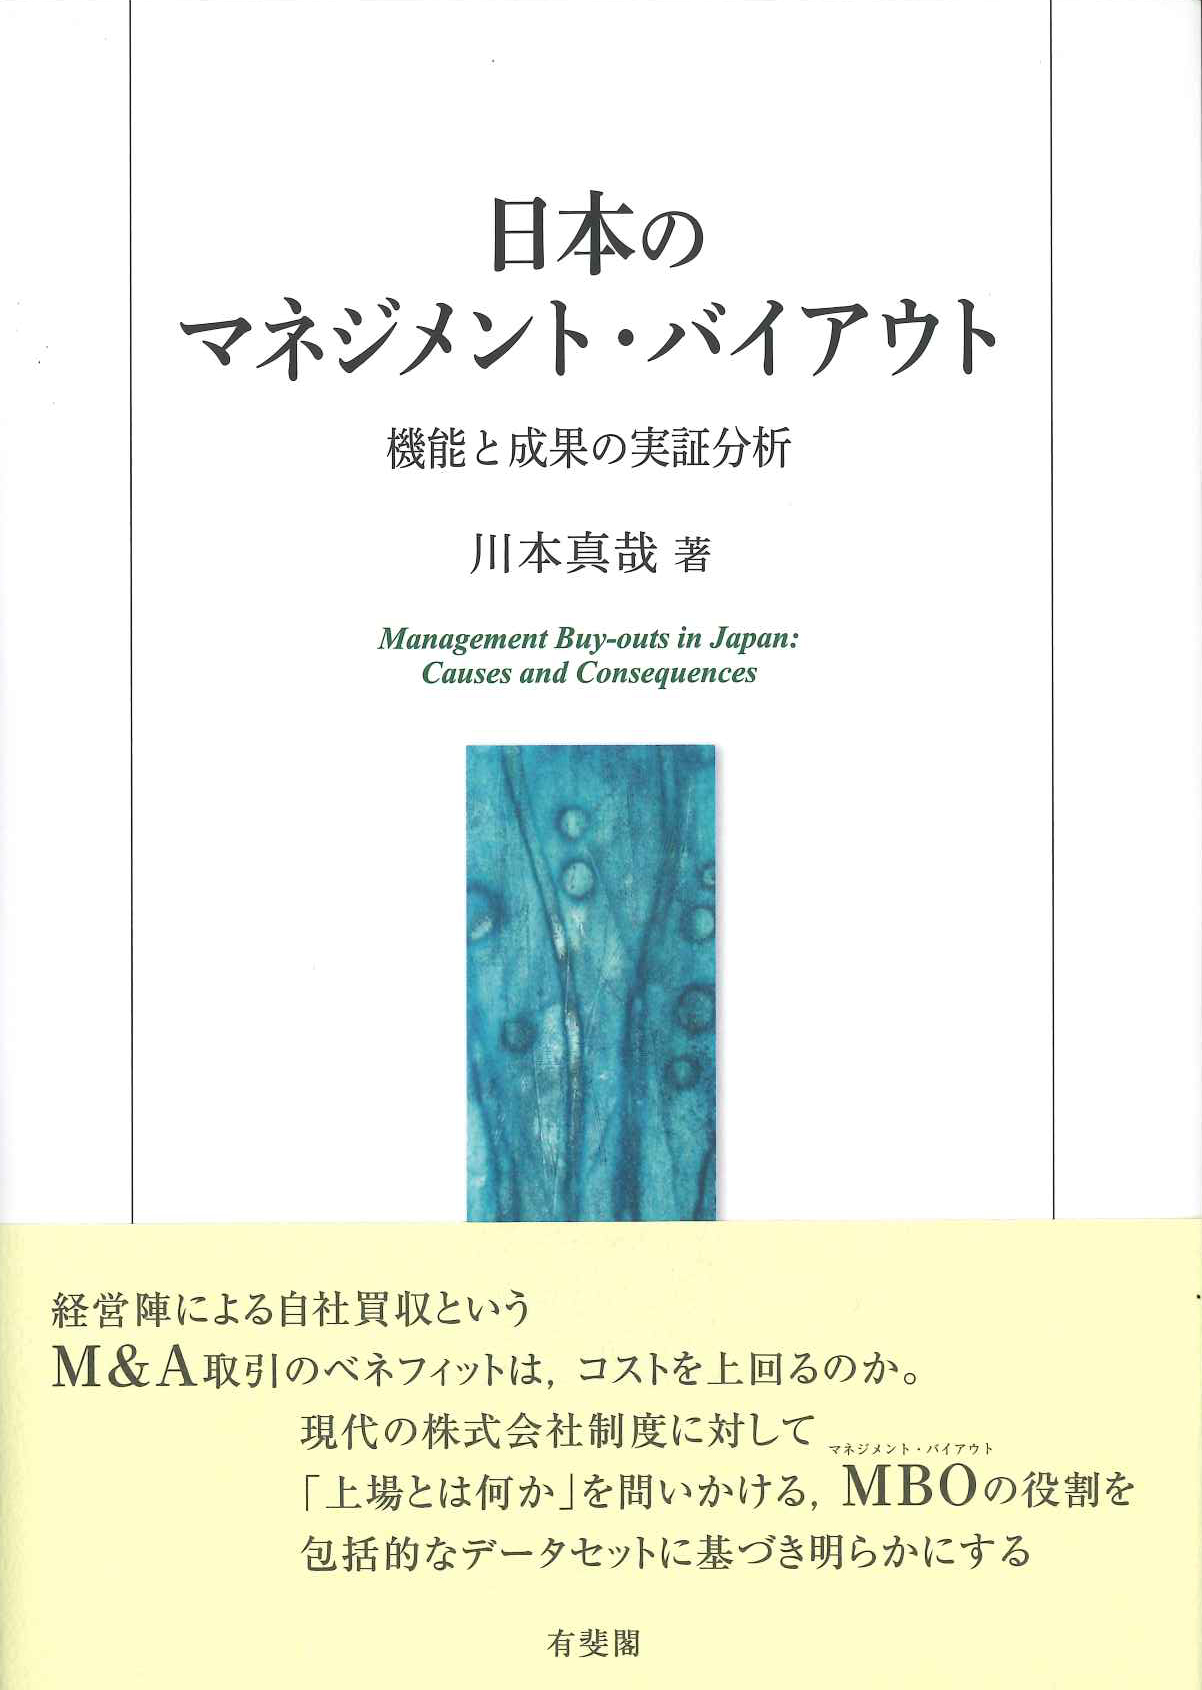 『日本のマネジメント・バイアウト -- 機能と成果の実証分析』